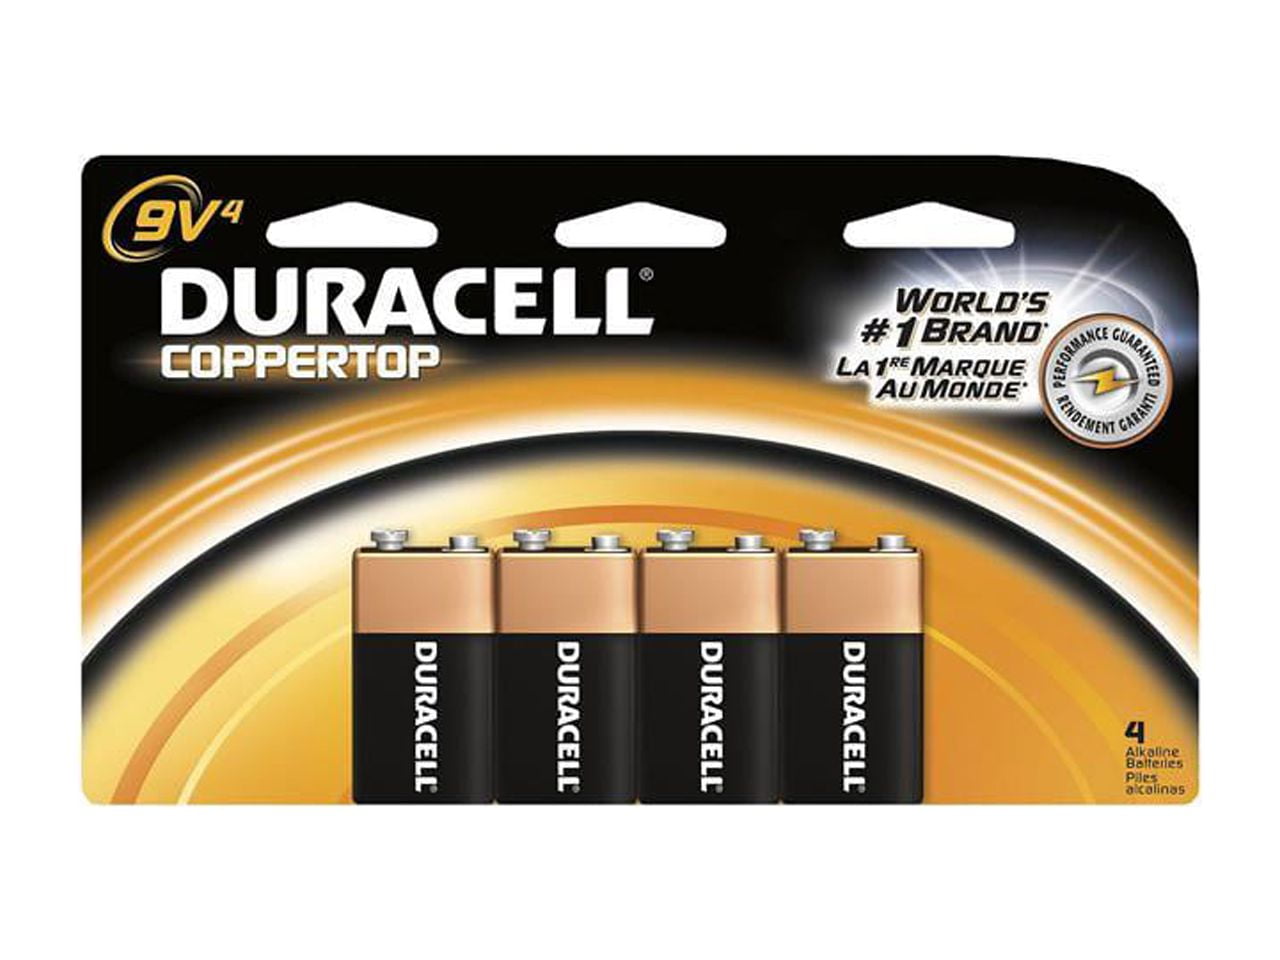 Duracell Recharge Ultra 9V 170 mAh (par 1) - Pile & chargeur - LDLC